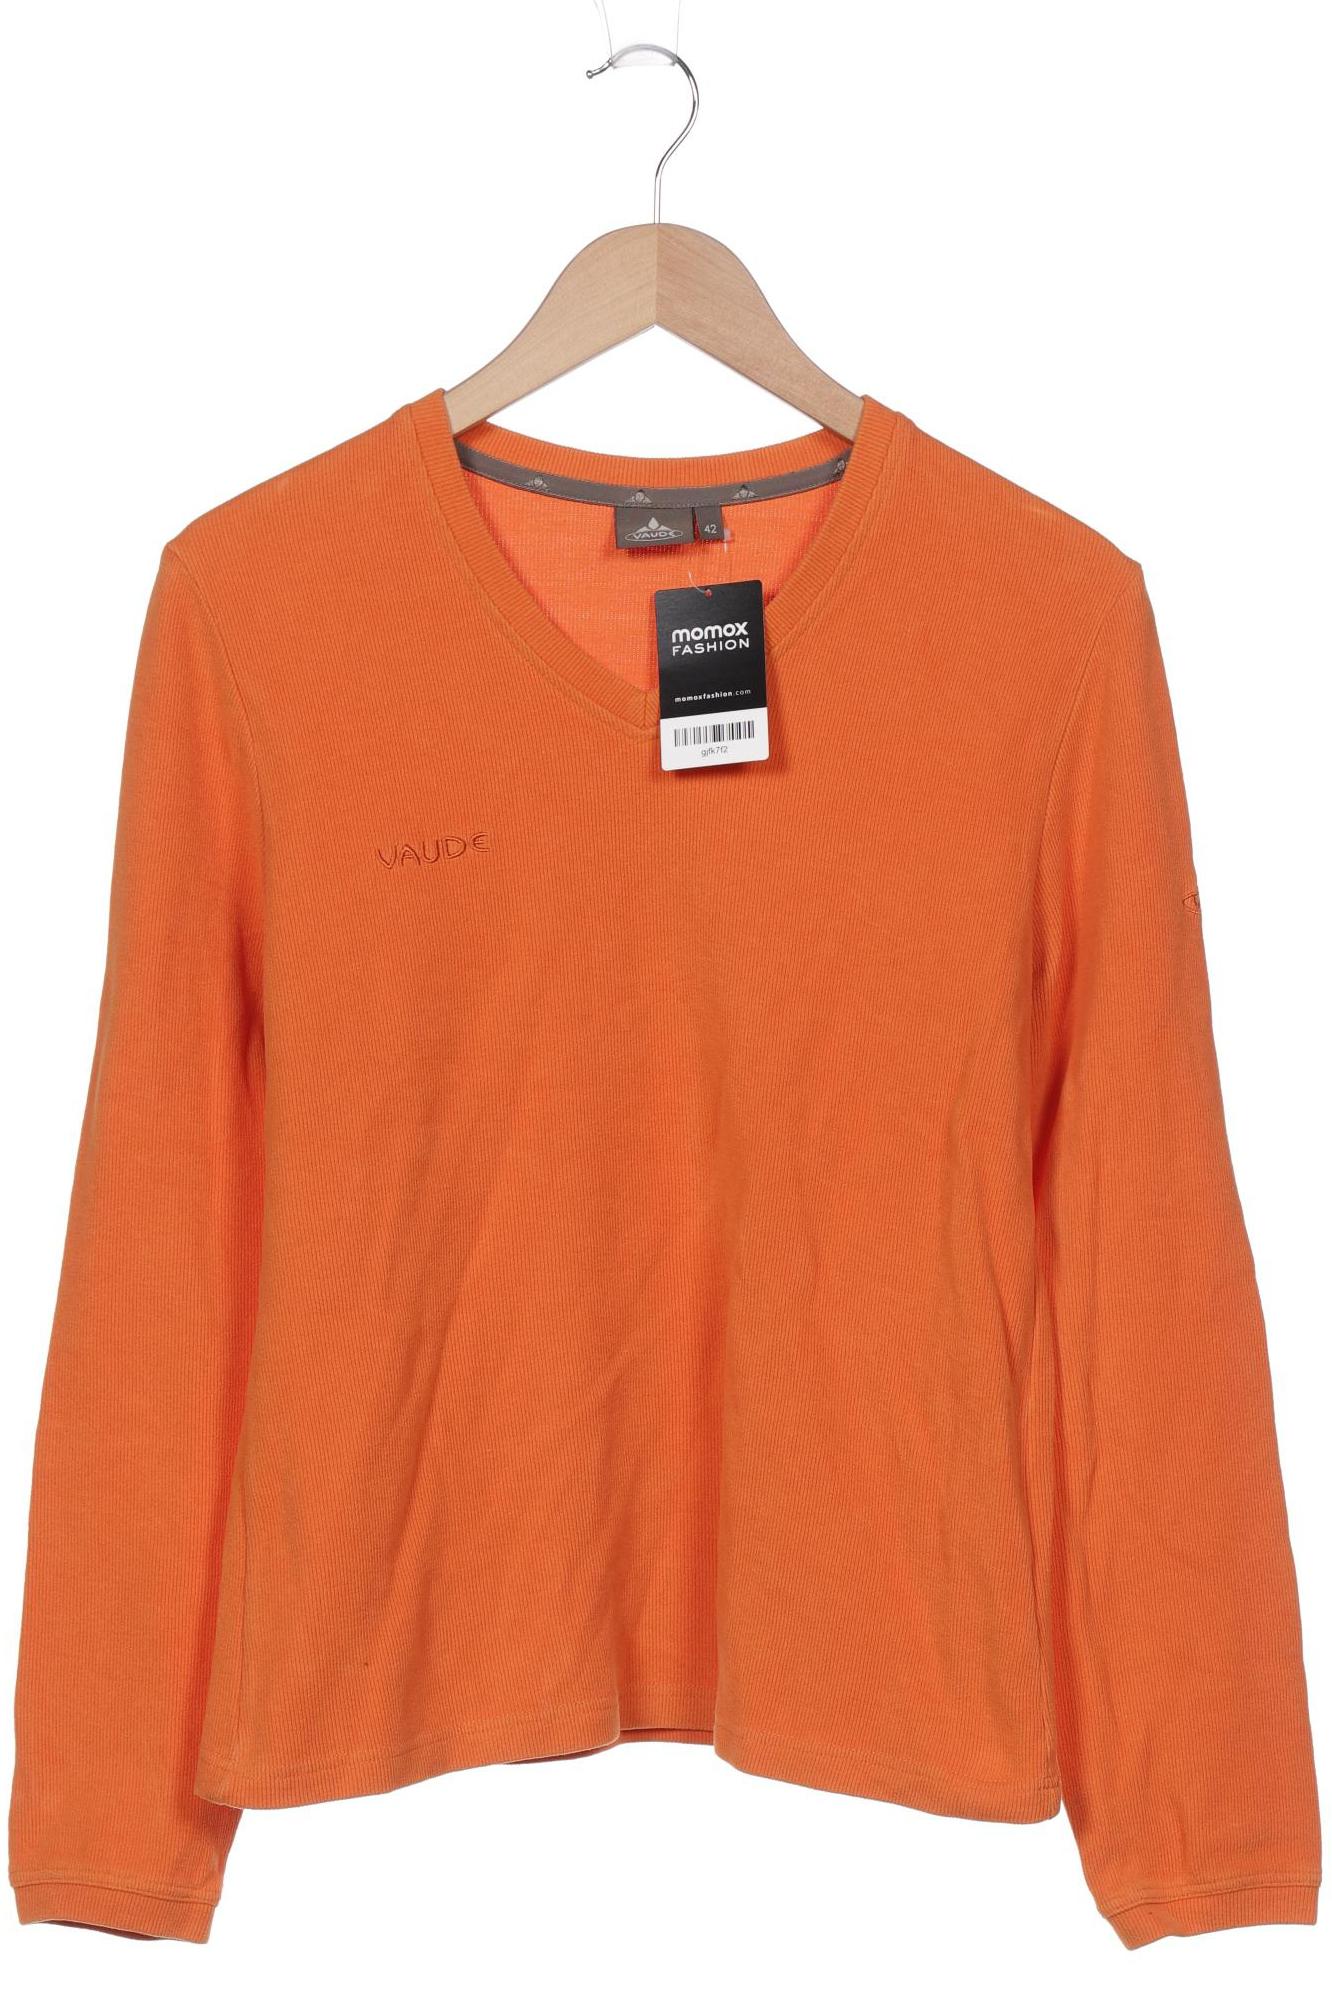 Vaude Damen Sweatshirt, orange, Gr. 42 von Vaude